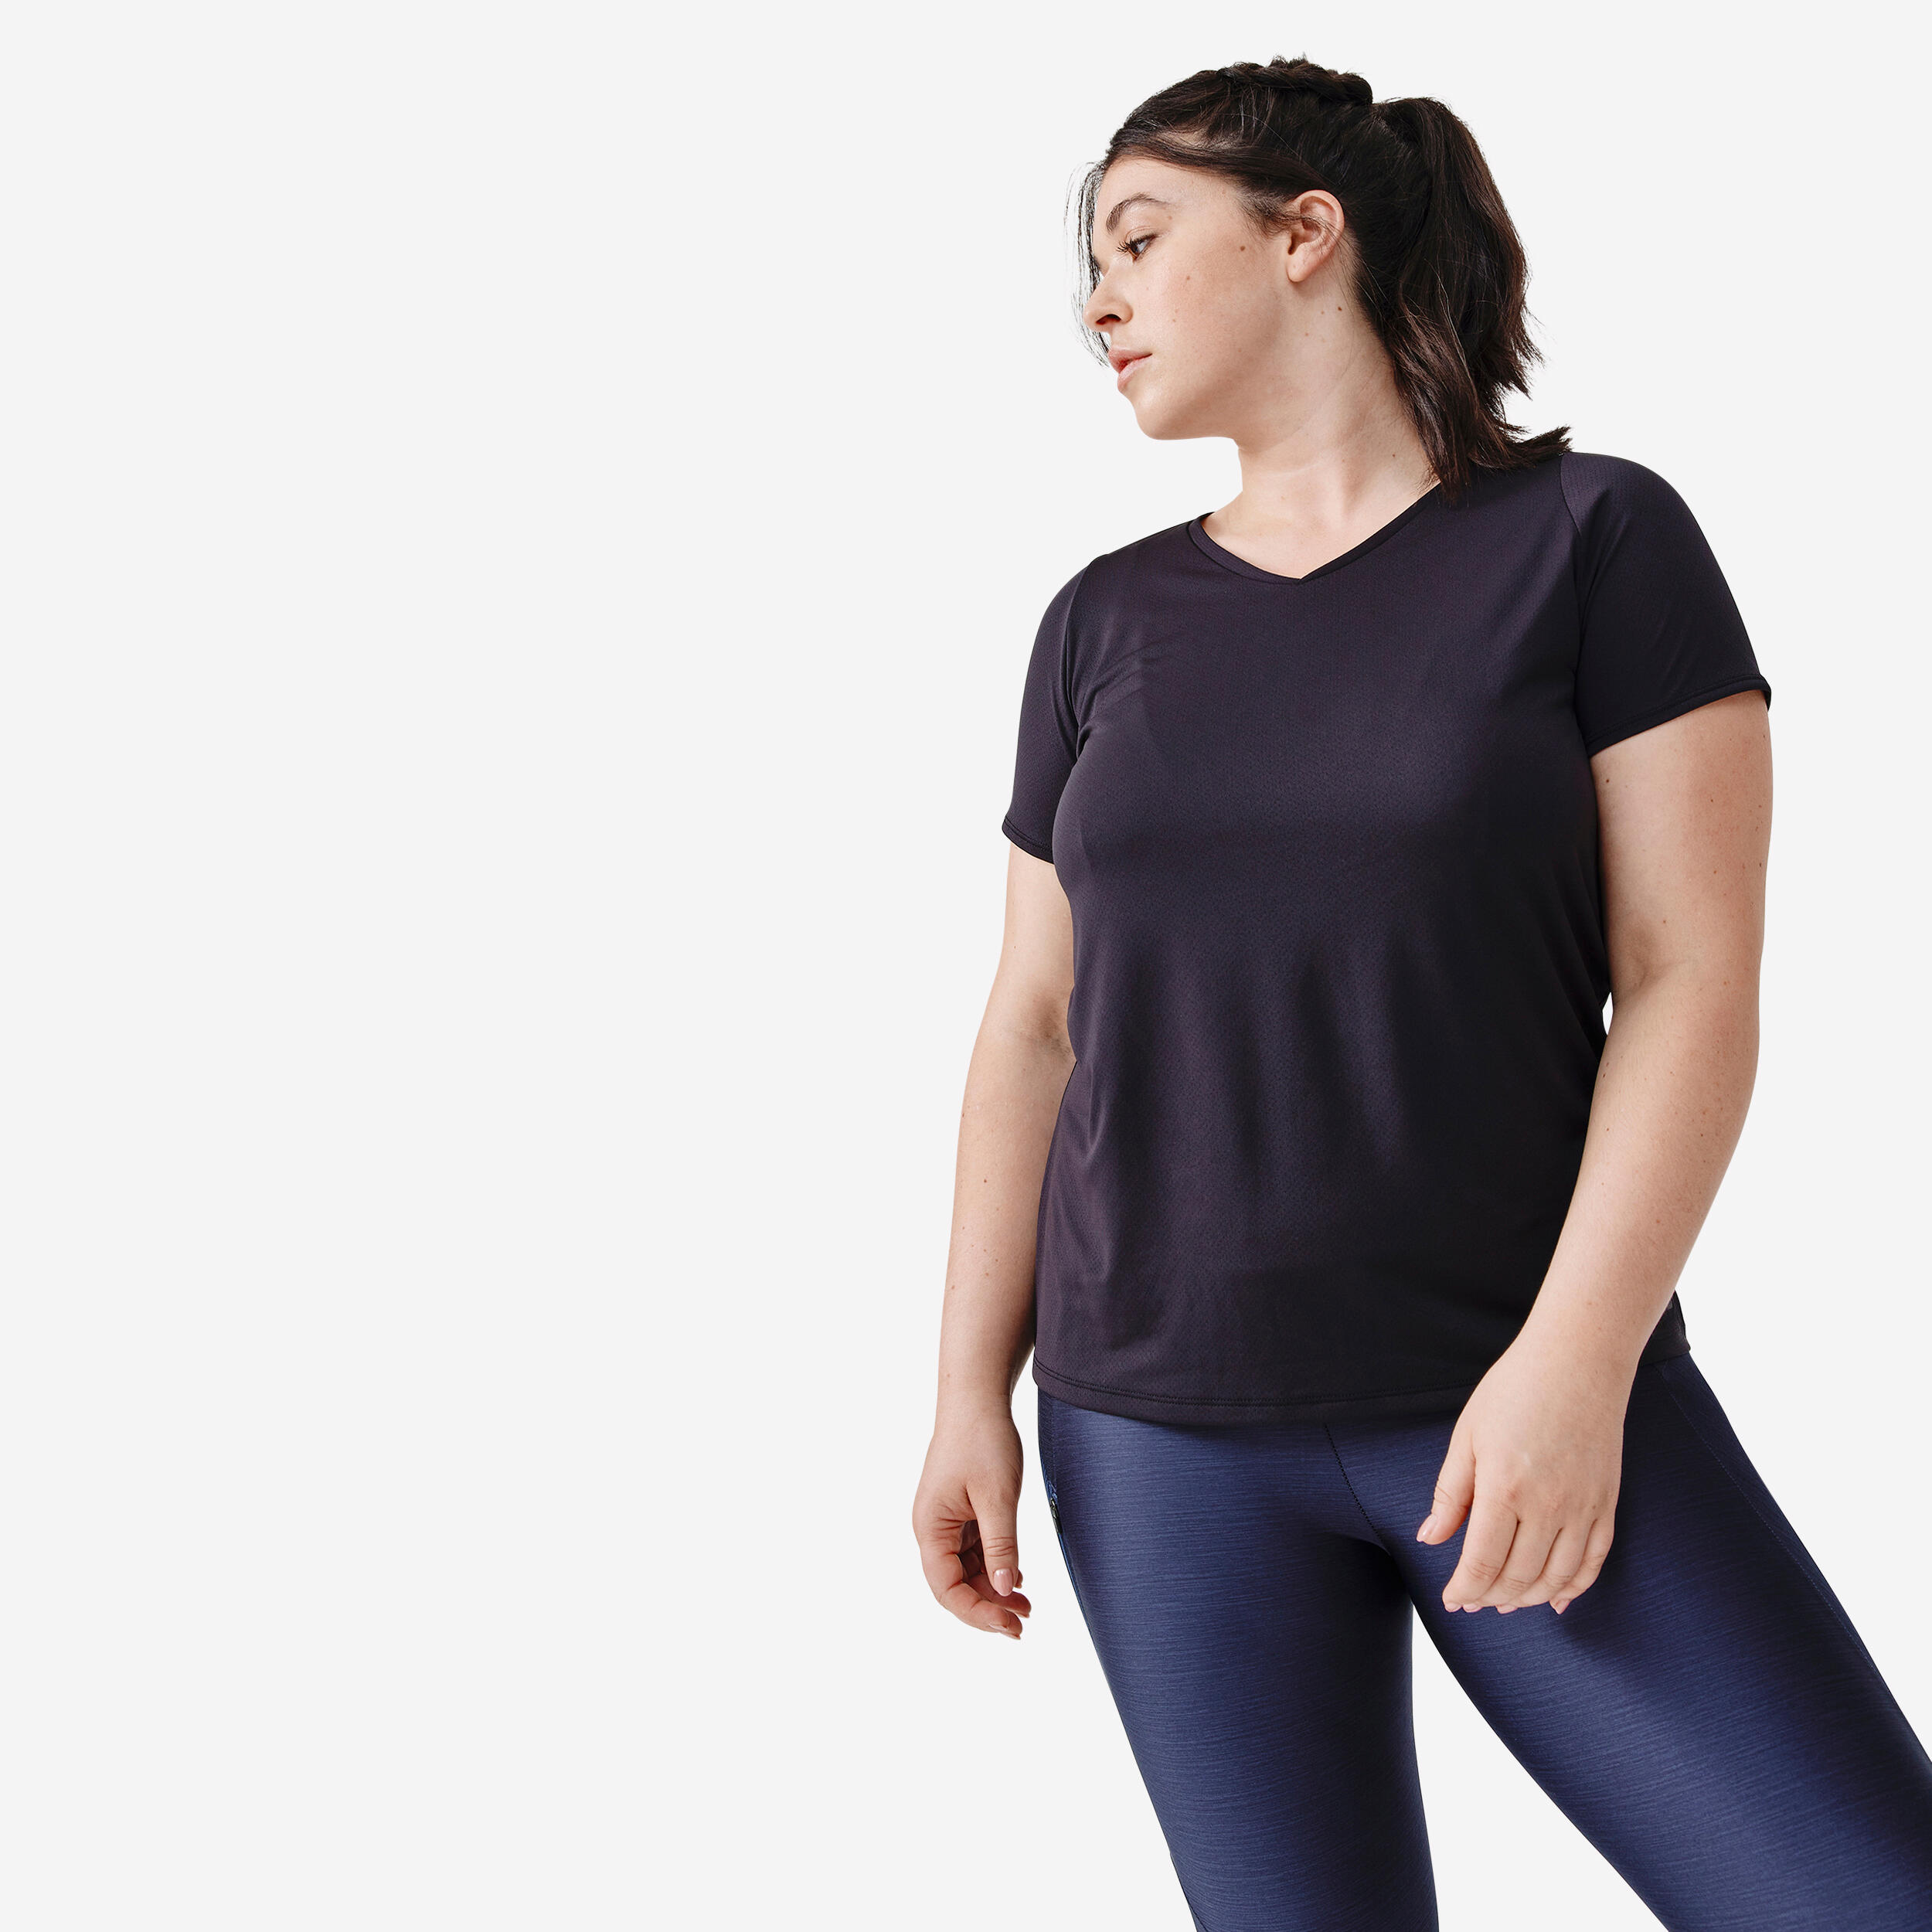 Buy Styli White & Black Printed Oversized T-Shirt Leggings Set for Women  Online @ Tata CLiQ